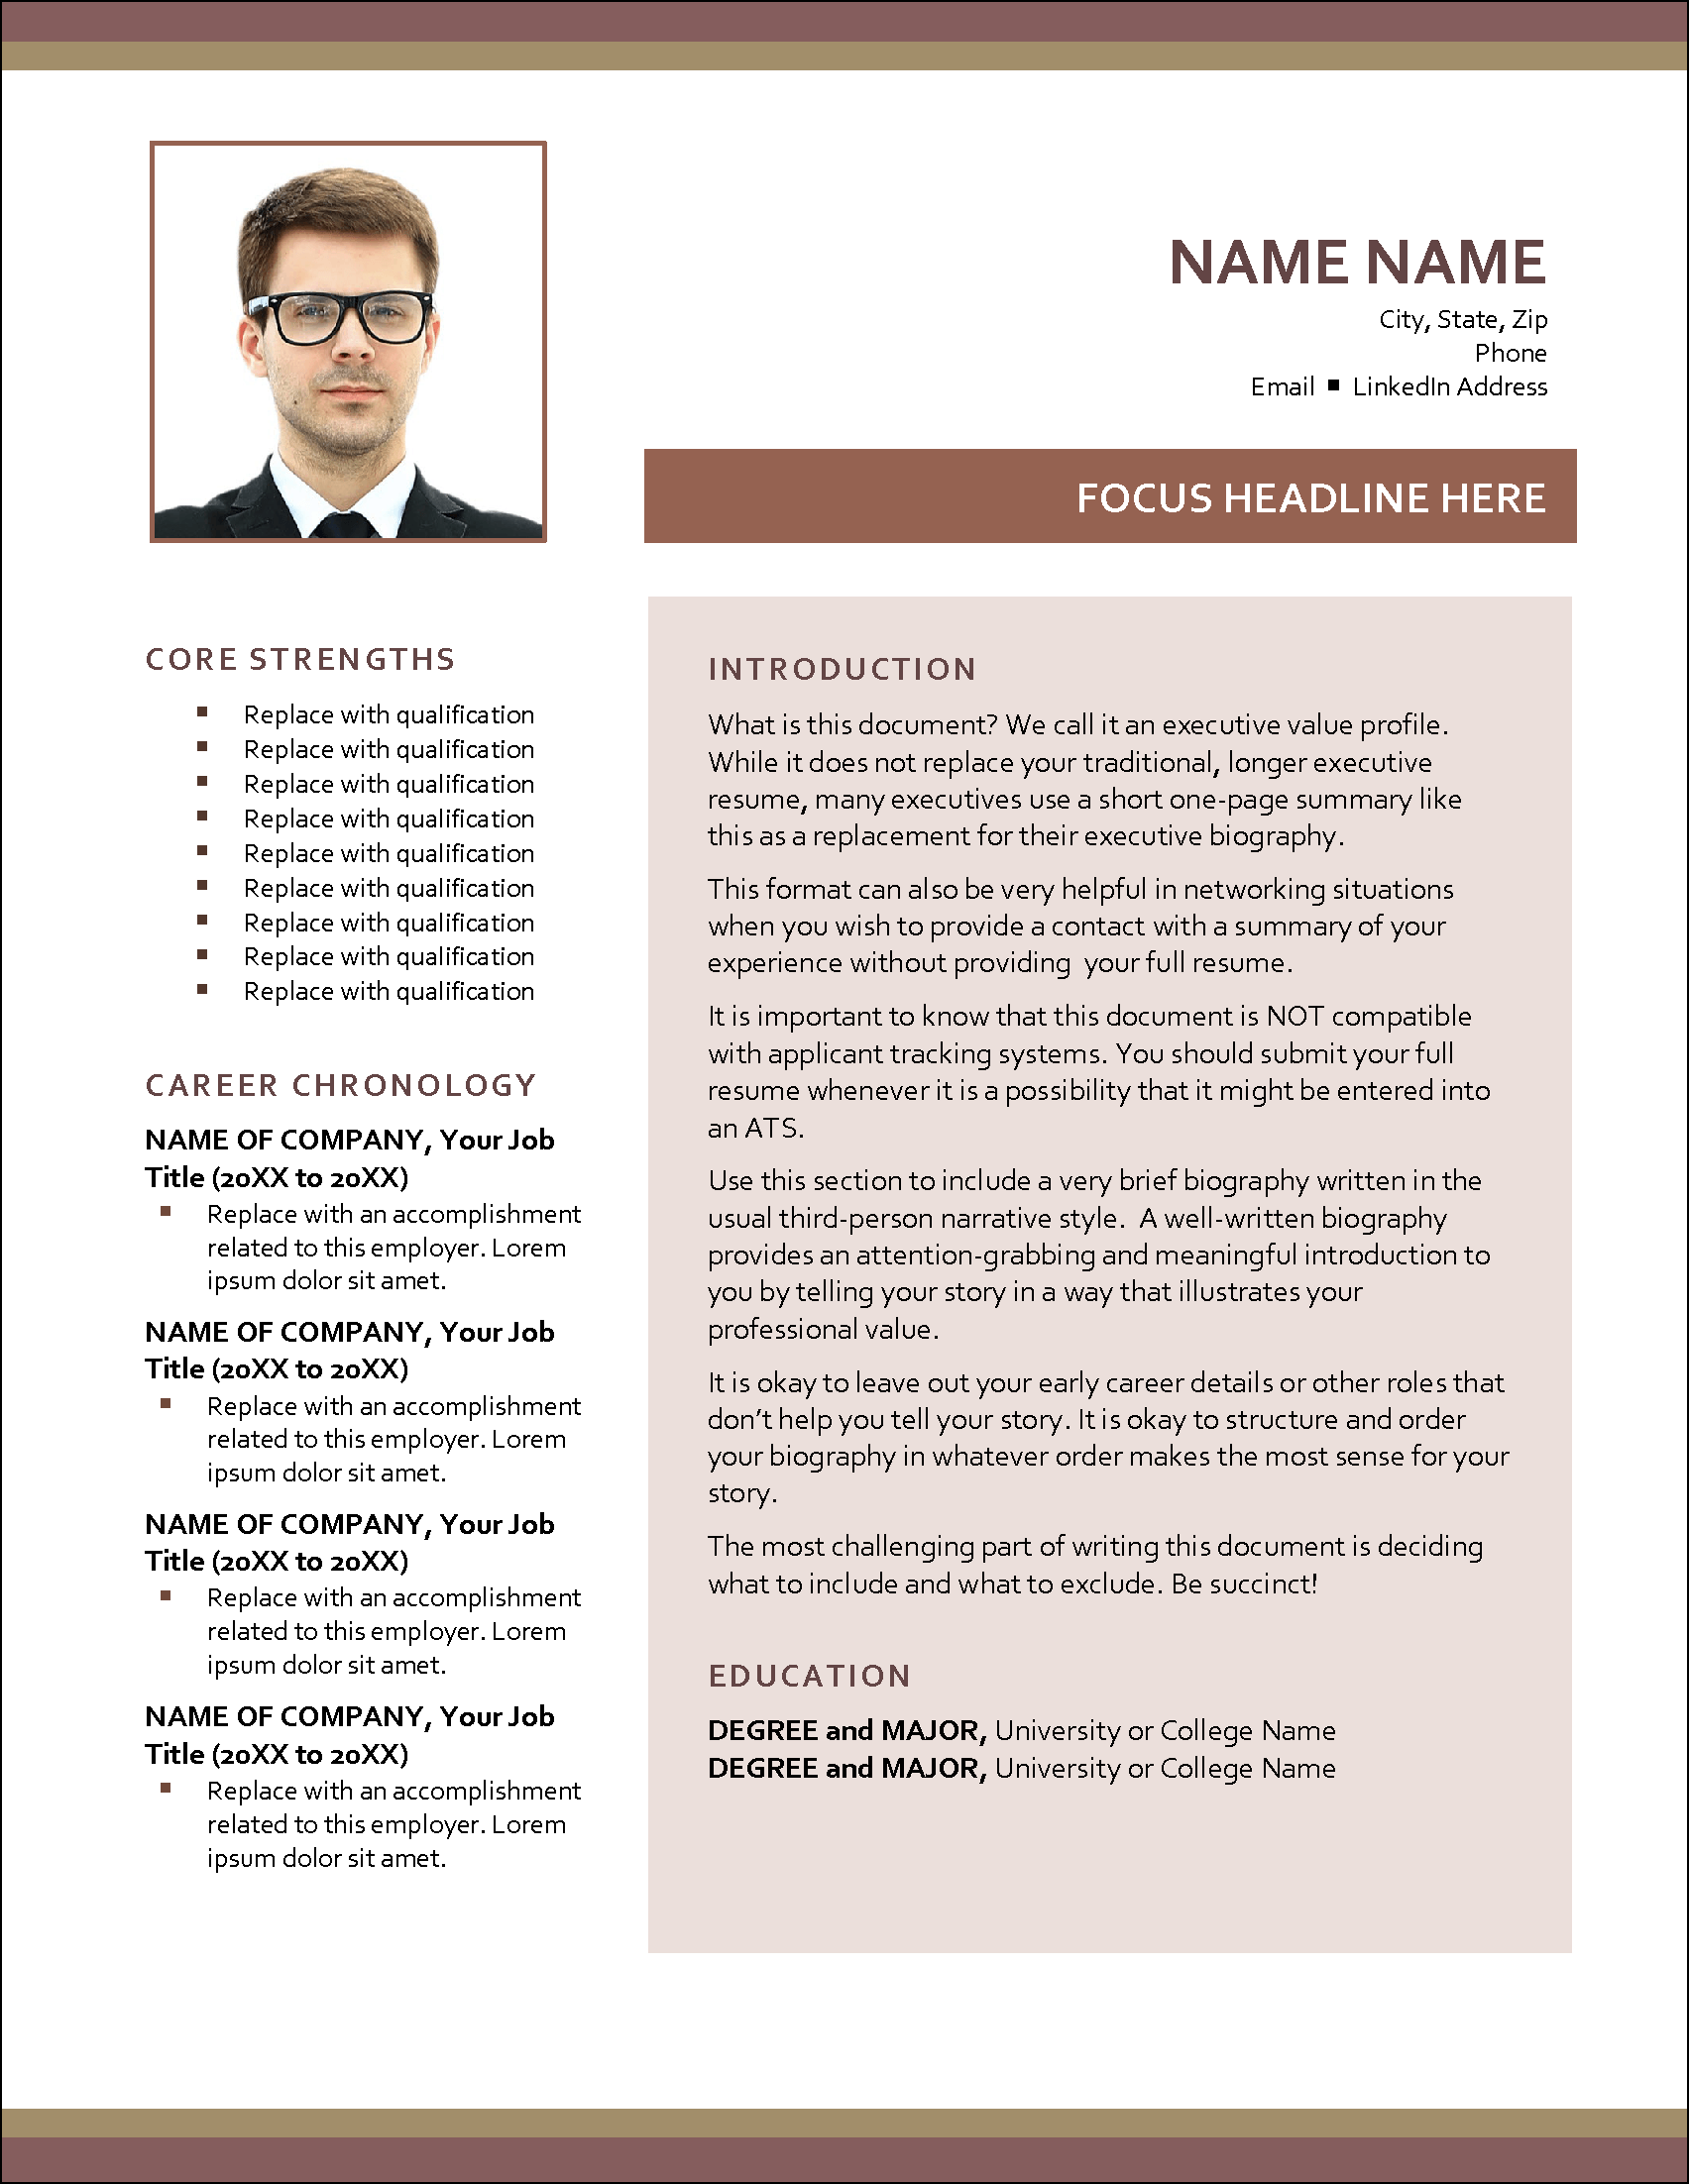 Executive Profiles